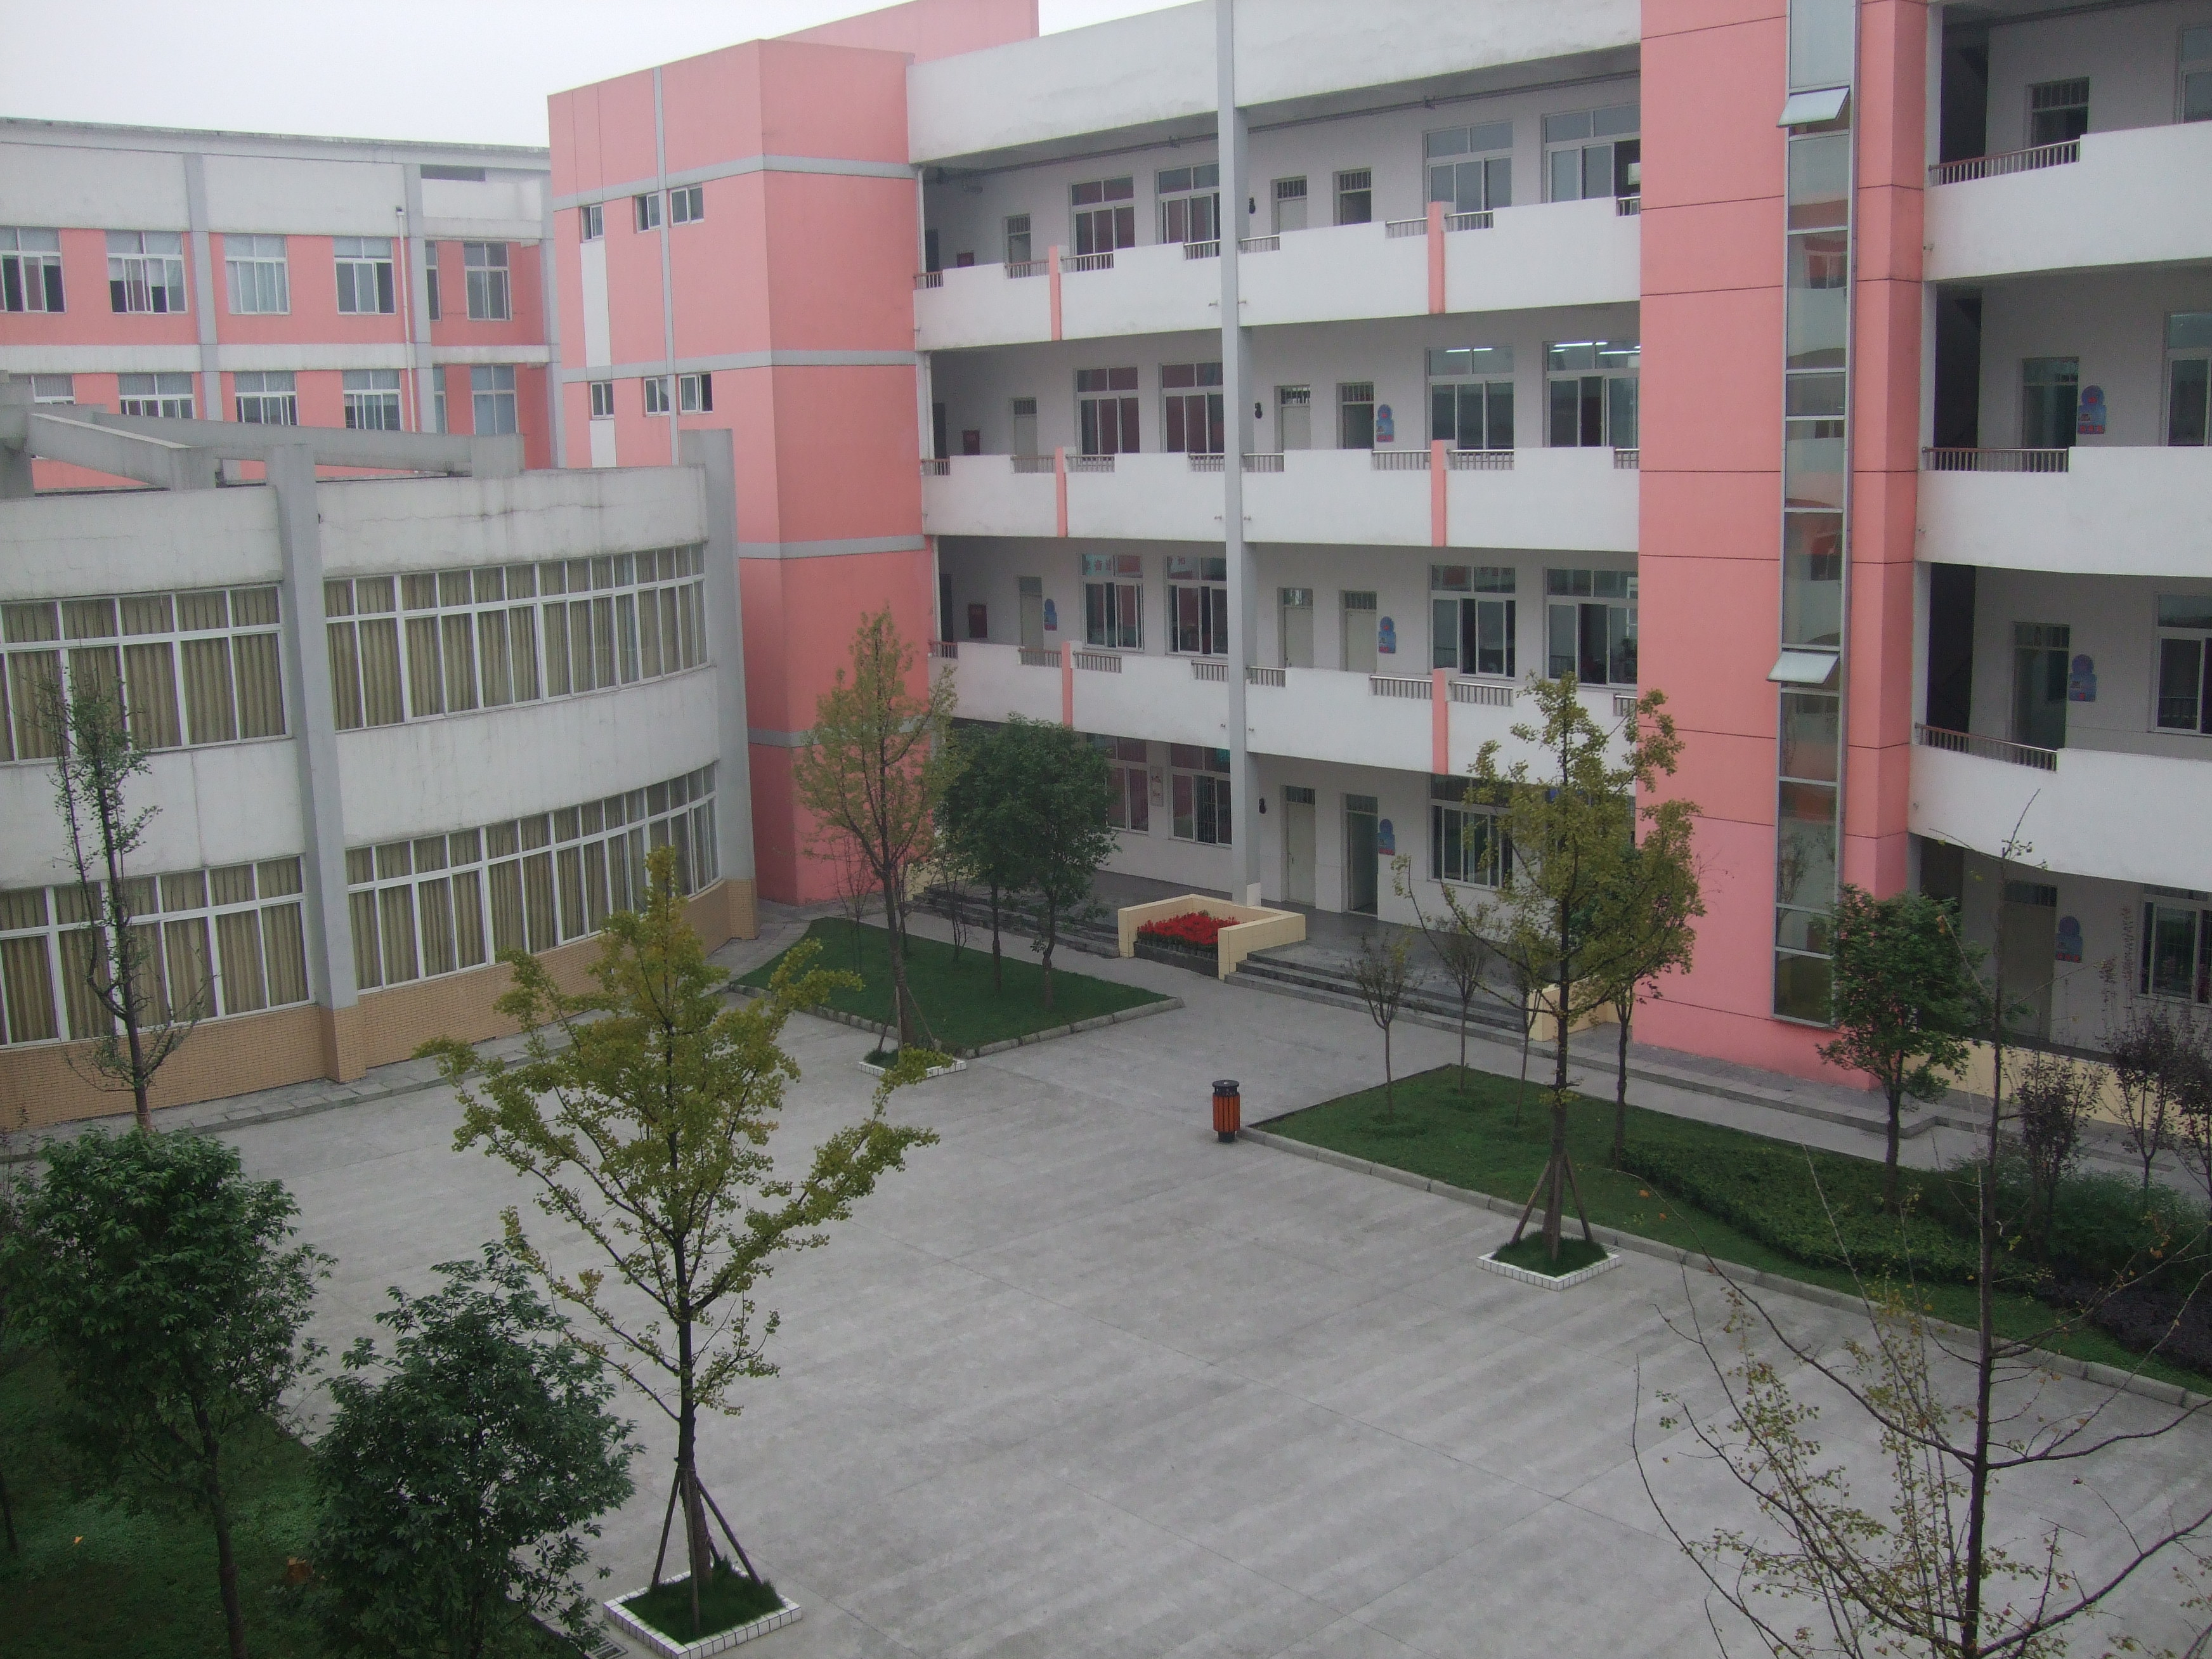 溫江區實驗學校